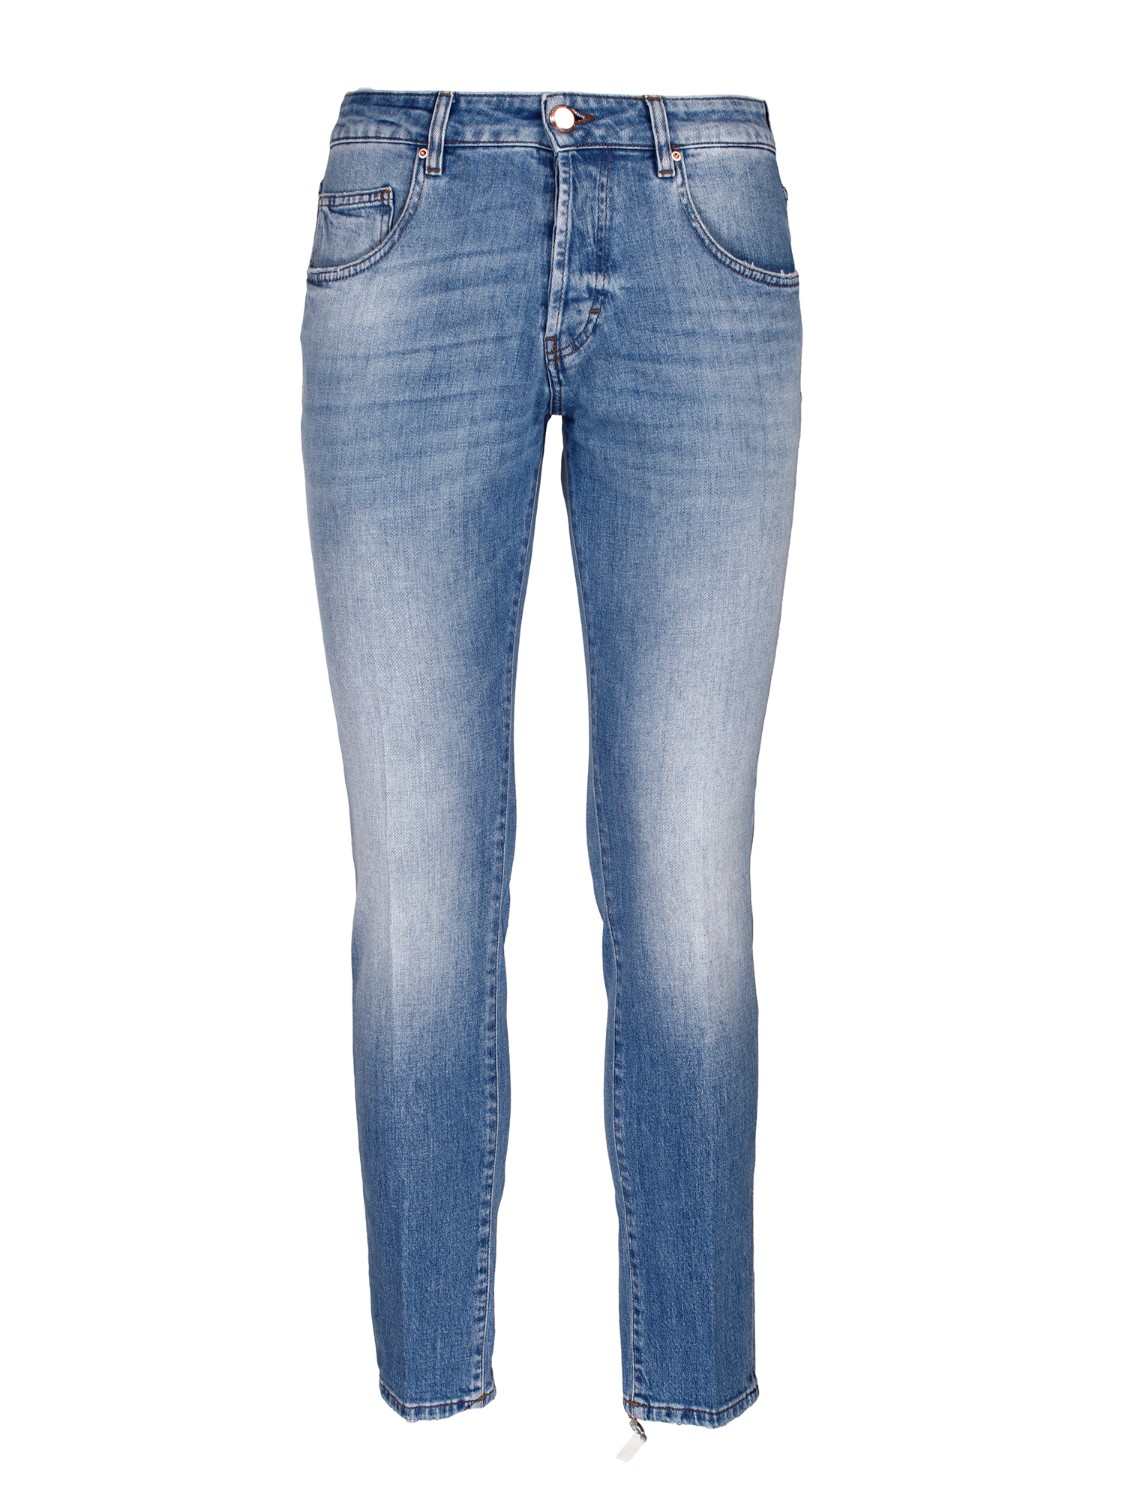 shop DON THE FULLER Saldi Jeans: Don The Fuller jeans "Milano" in cotone stretch.
Vita regolare.
Modello cinque tasche.
Chiusura con bottoni.
Lunghezza alla caviglia.
Vestibilità slim.
Composizione: 98% cotone 2% elastan.
Made in Italy.. MILANO DTF775SCSS701/A-DENIM CHIARO number 8758083